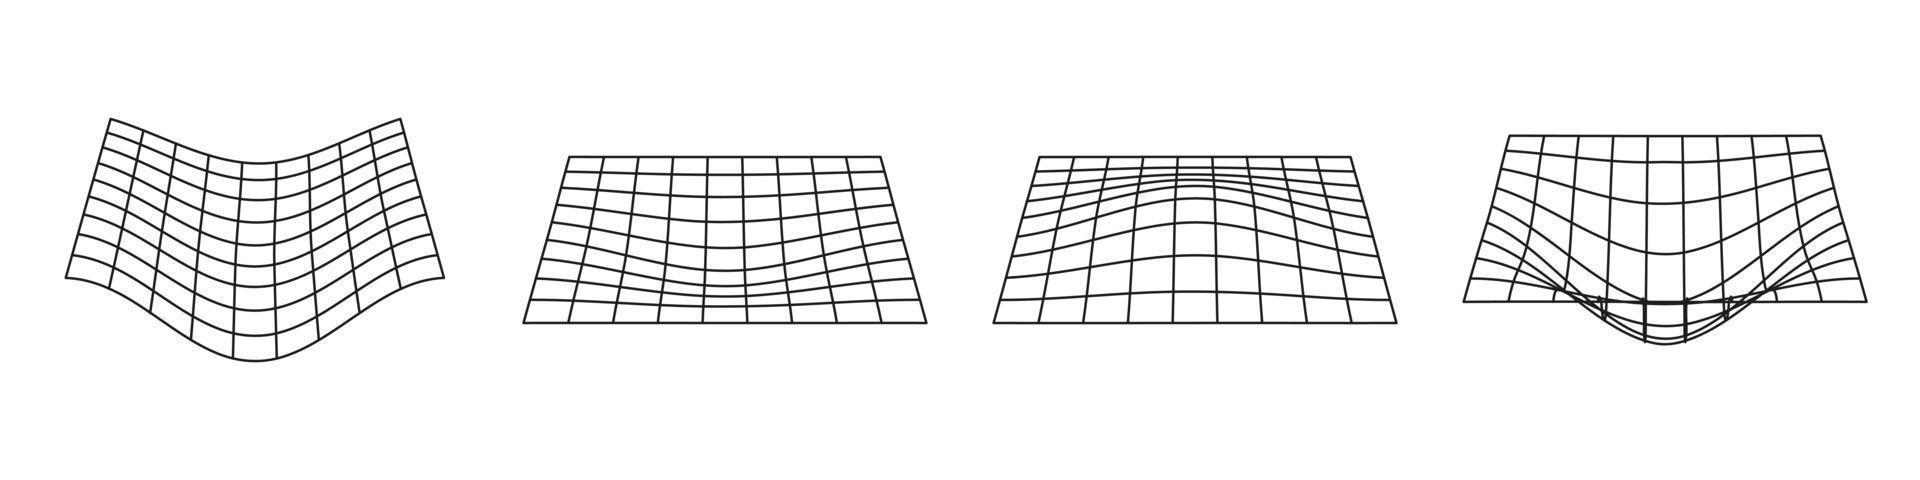 padrão de wireframe futurista de grade. Forma geométrica de urdidura 3D com linha ondulada curva. grade de onda preta sobre fundo branco. design moderno abstrato. ilustração vetorial isolado. vetor